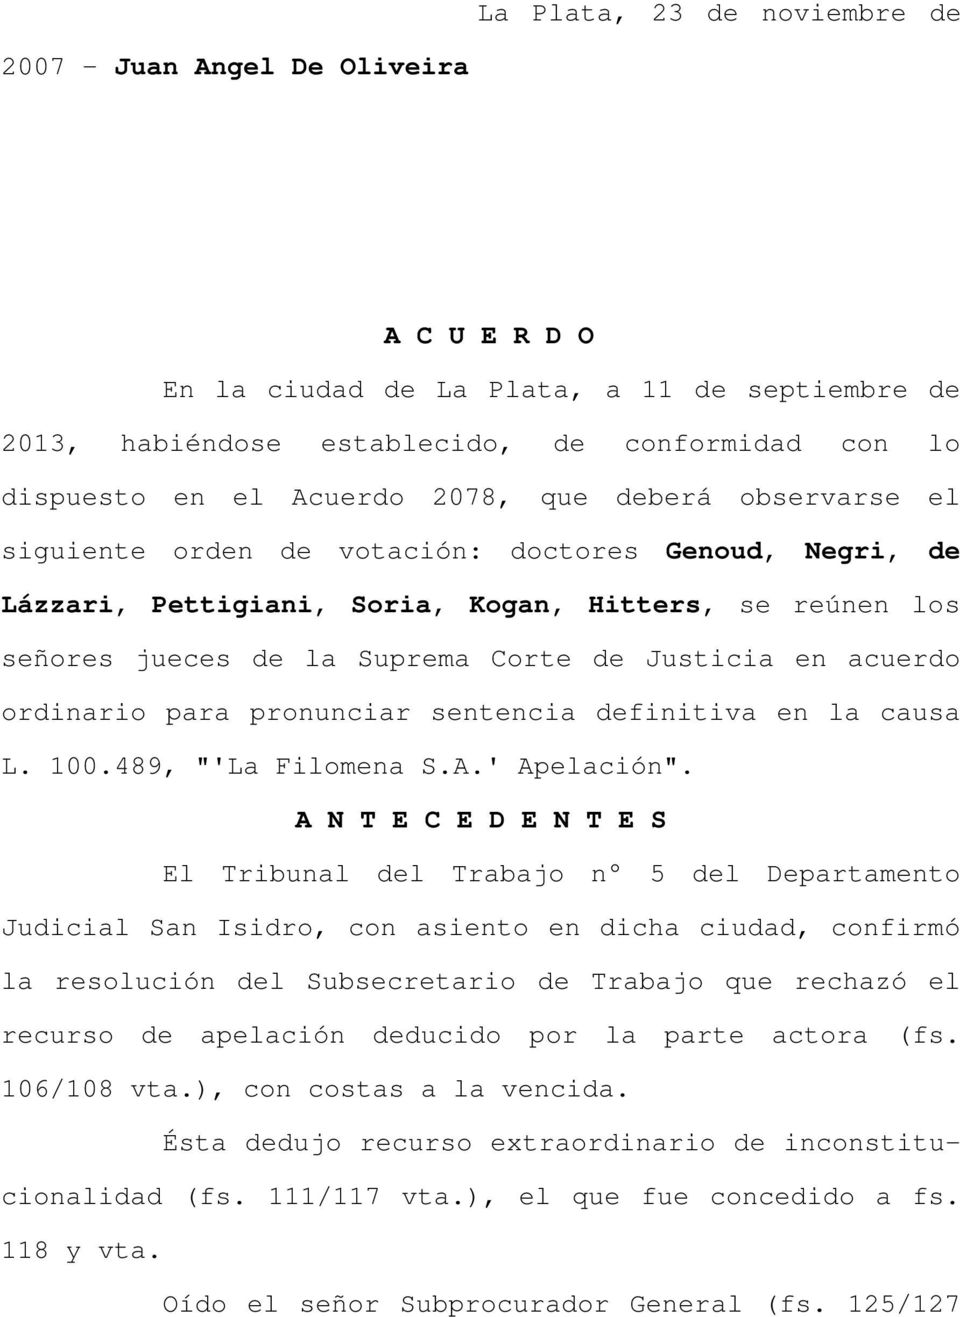 acuerdo ordinario para pronunciar sentencia definitiva en la causa L. 100.489, "'La Filomena S.A.' Apelación".